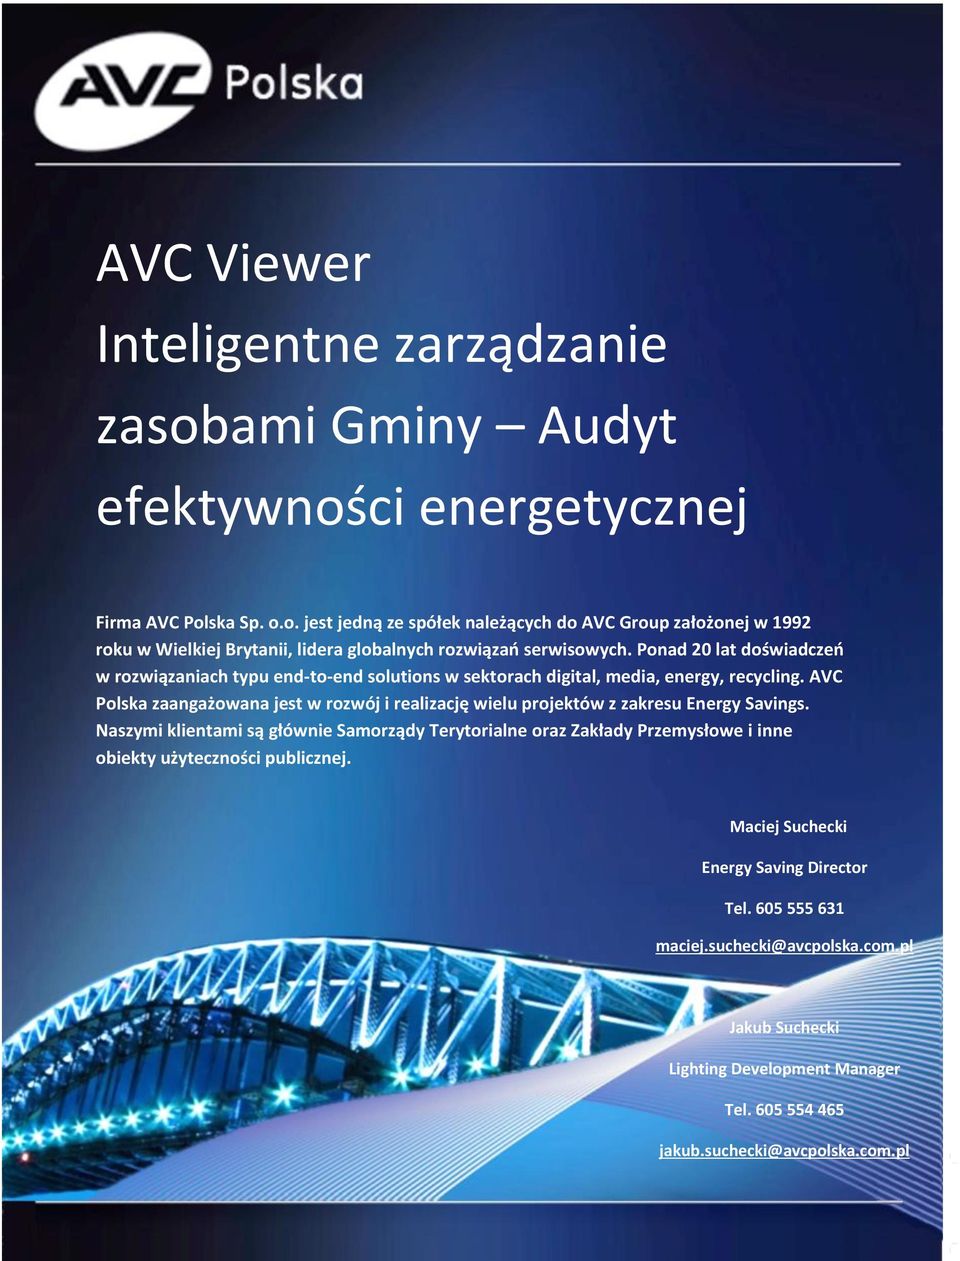 AVC Polska zaangażowana jest w rozwój i realizację wielu projektów z zakresu Energy Savings.